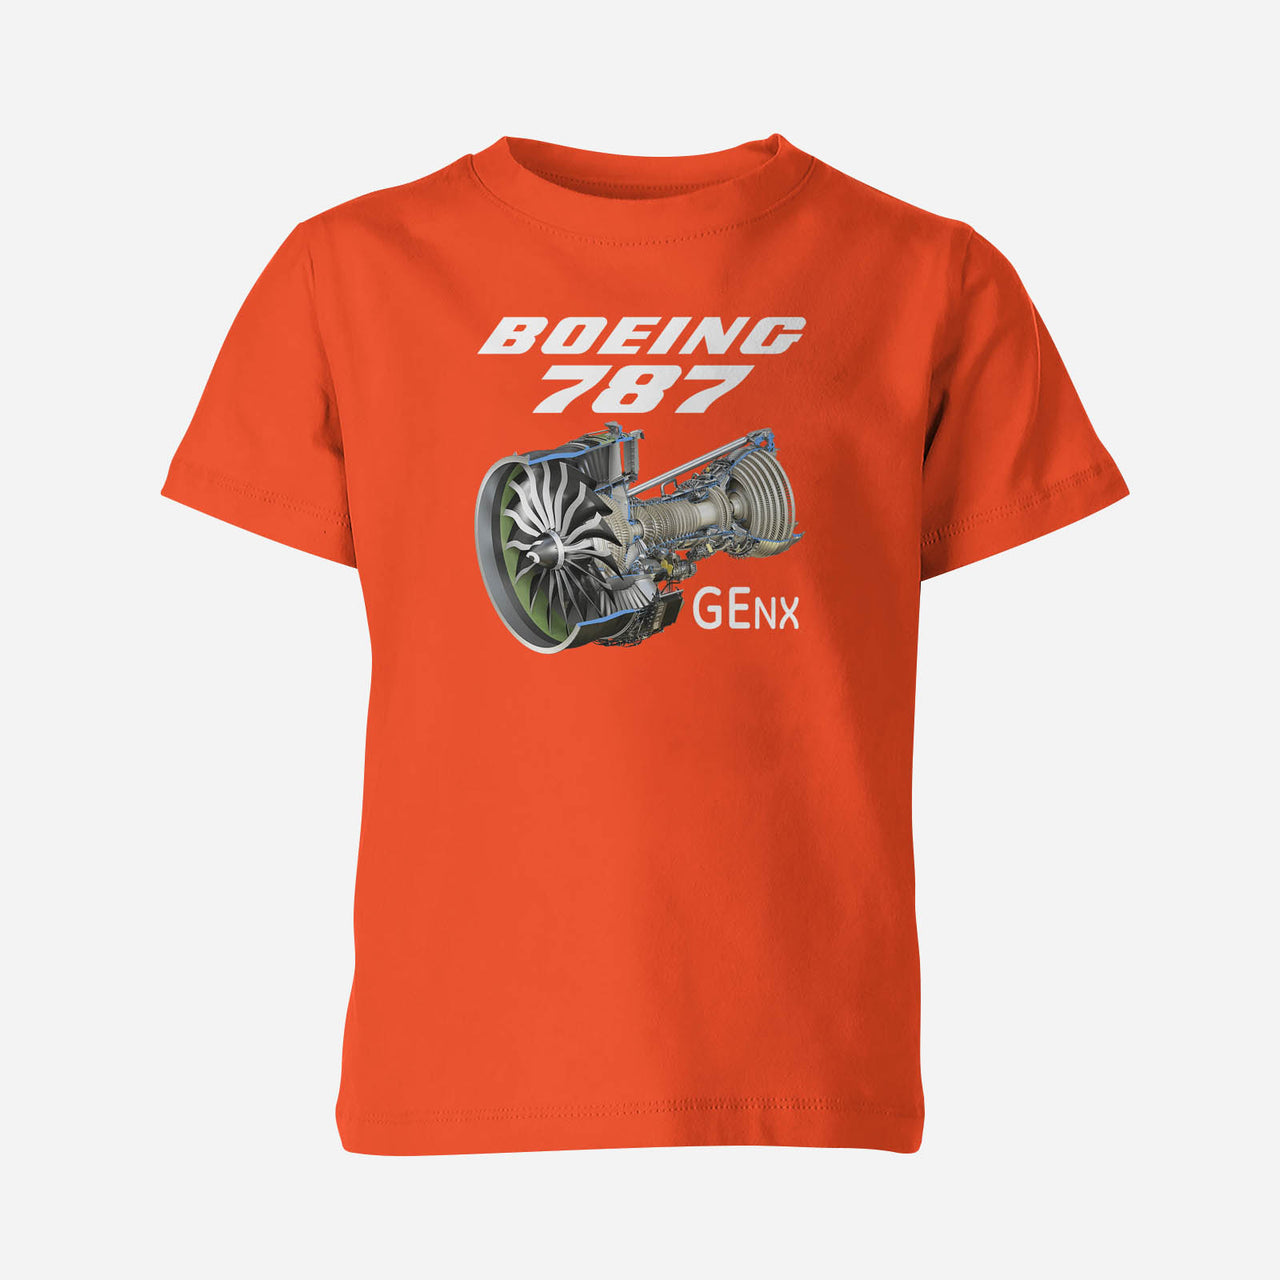 Boeing 787 & GENX Engine Designed Children T-Shirts